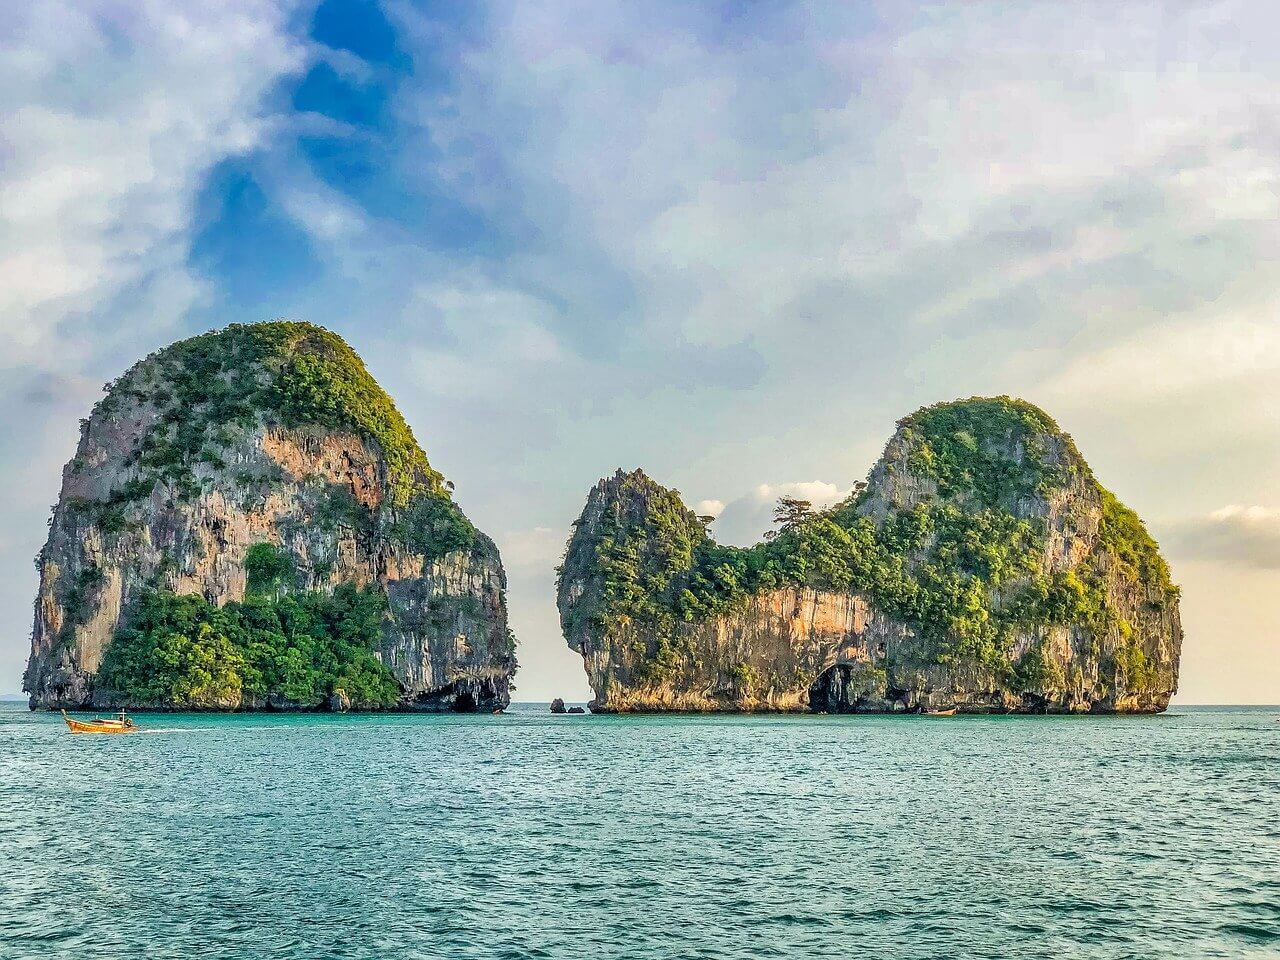 Thai island hopping